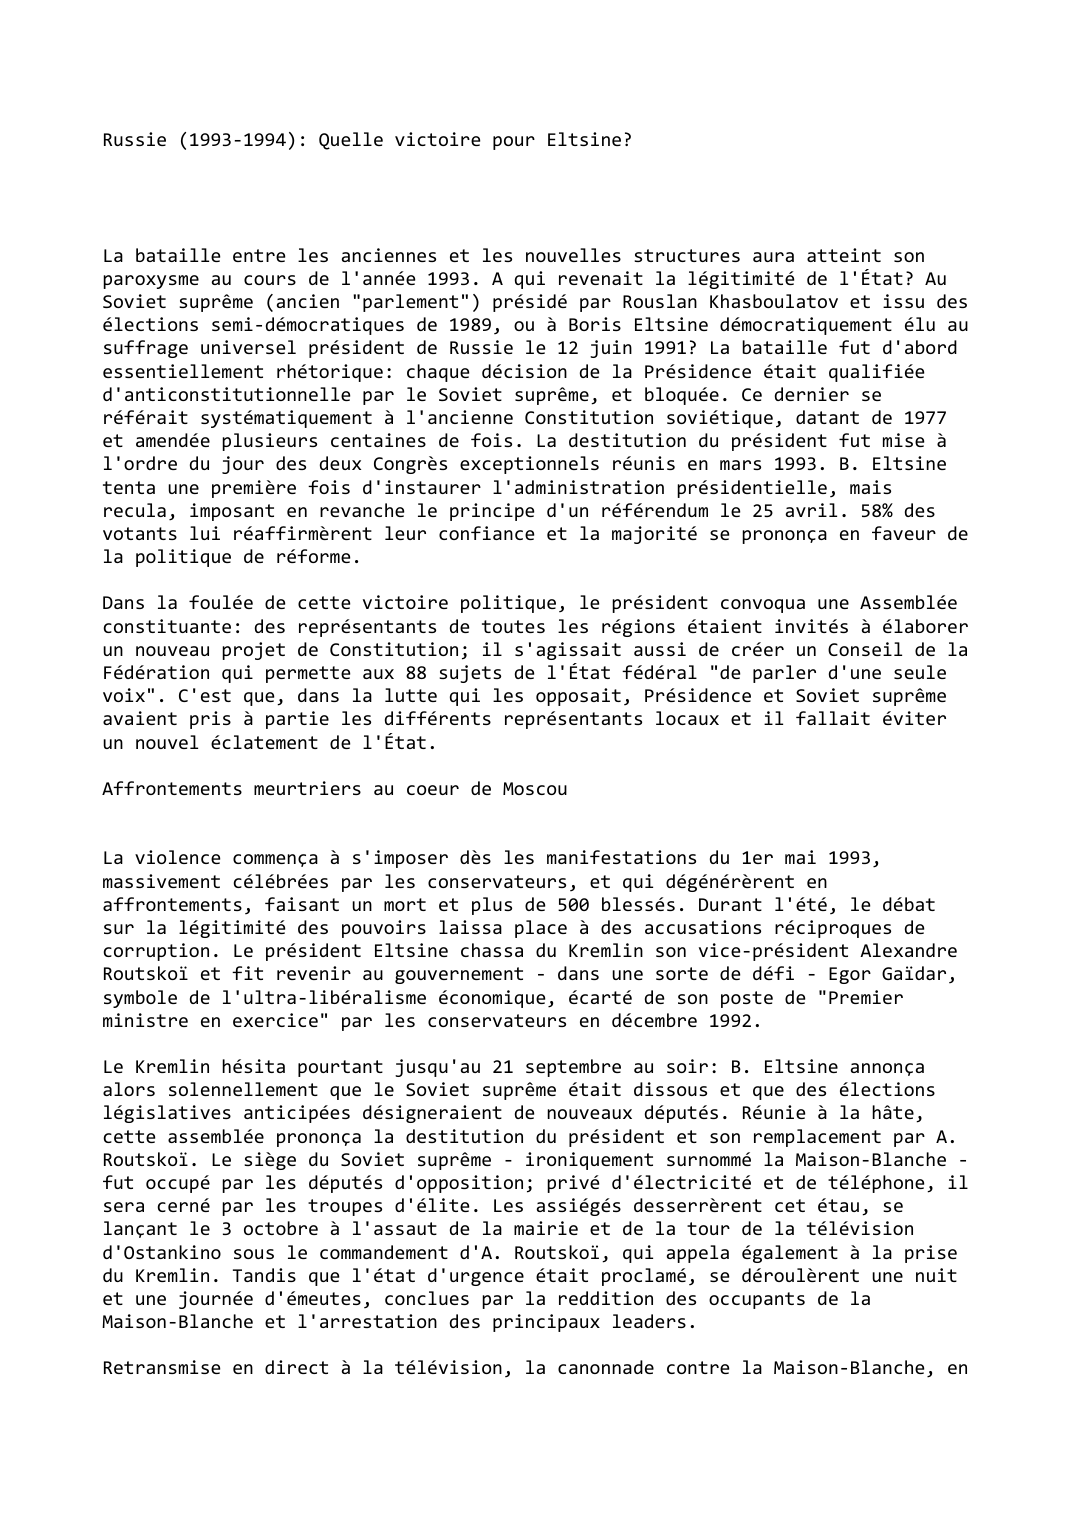 Prévisualisation du document Russie (1993-1994): Quelle victoire pour Eltsine?